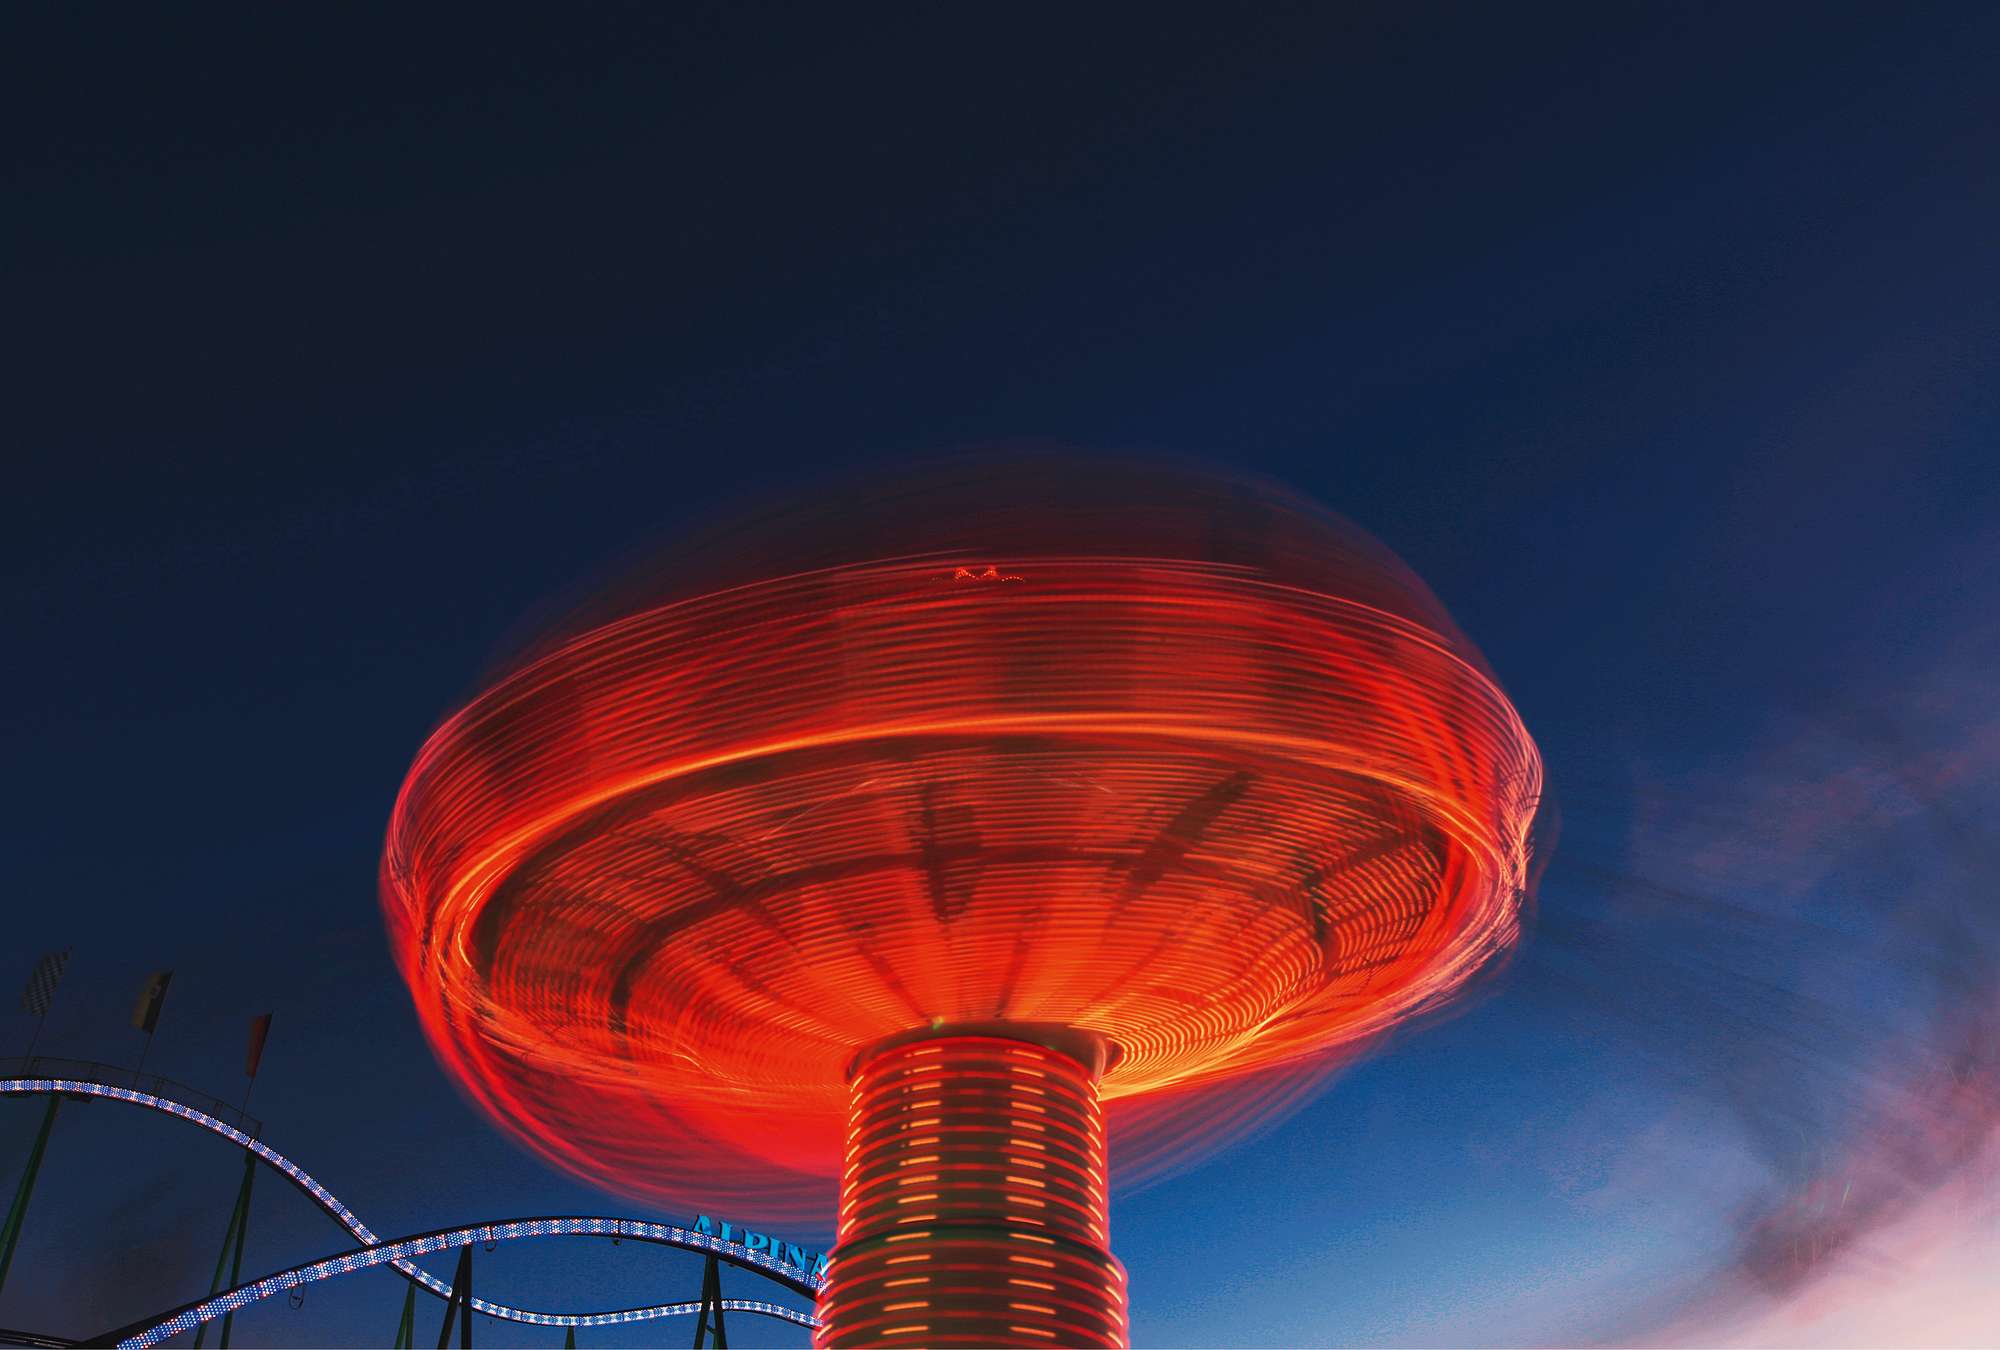             Carosello rosso - Sfondo fotografico carnevale di notte
        